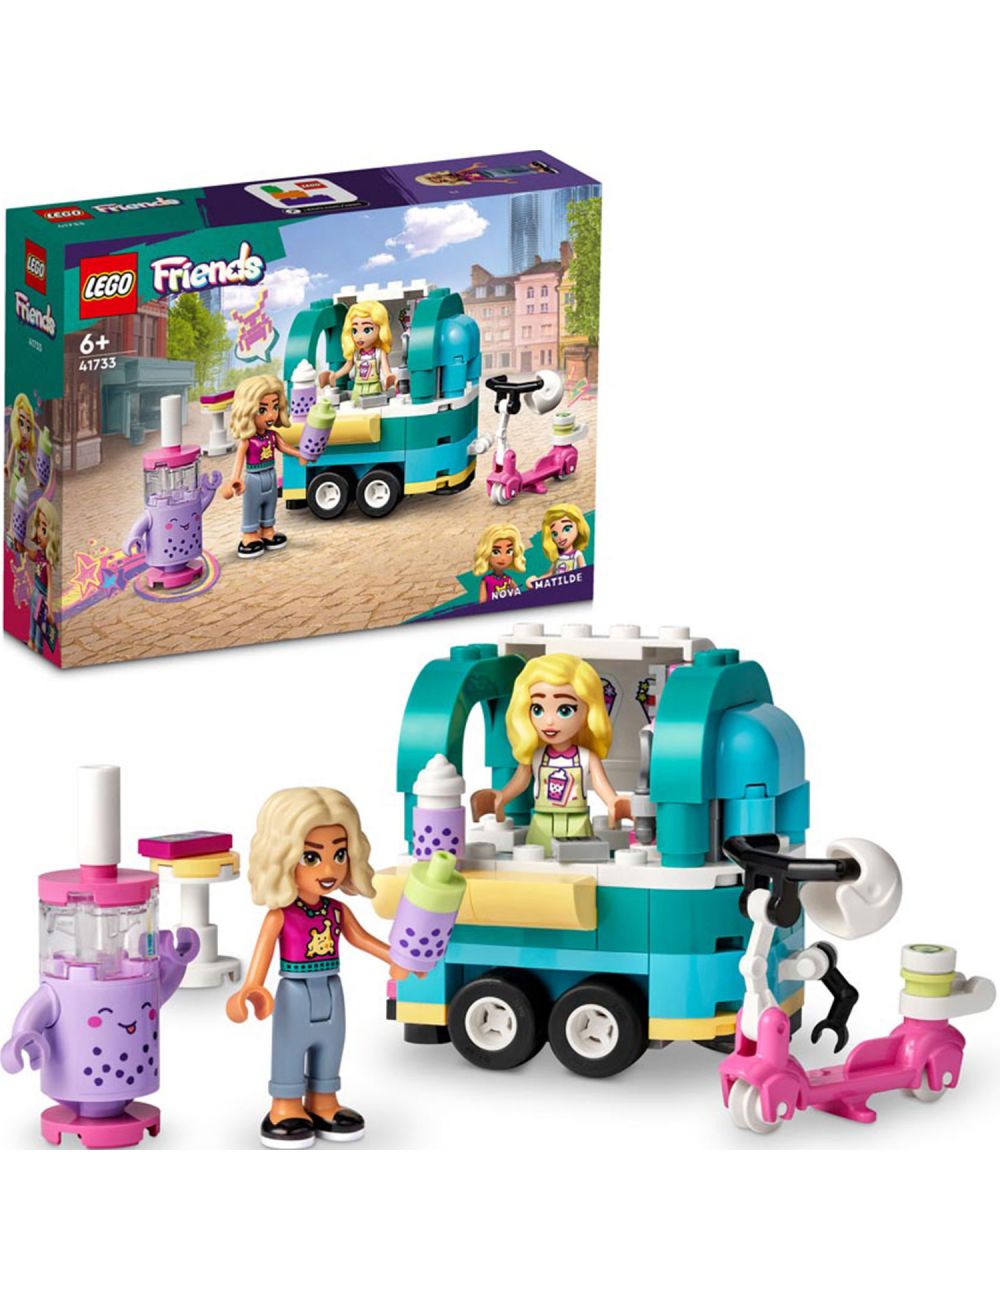 LEGO Friends Mobilny Sklep z Bubble Tea Klocki Zestaw 41733